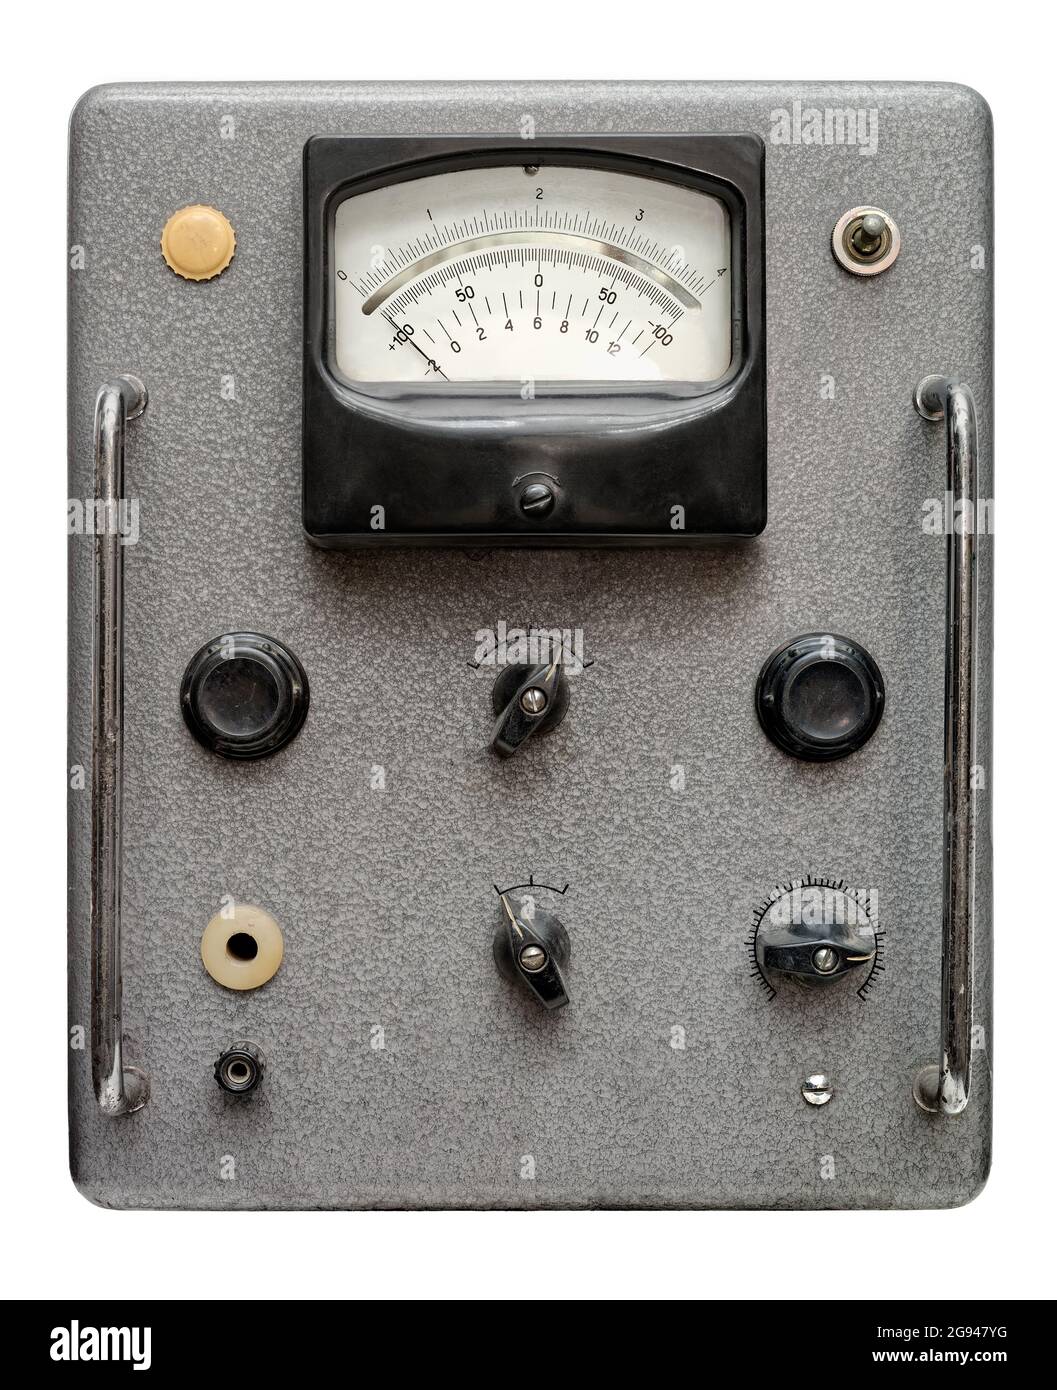 Oggetti isolati: Pannello di controllo molto vecchio con interruttori, lampade, indicatori, scale e quadranti, su sfondo bianco Foto Stock